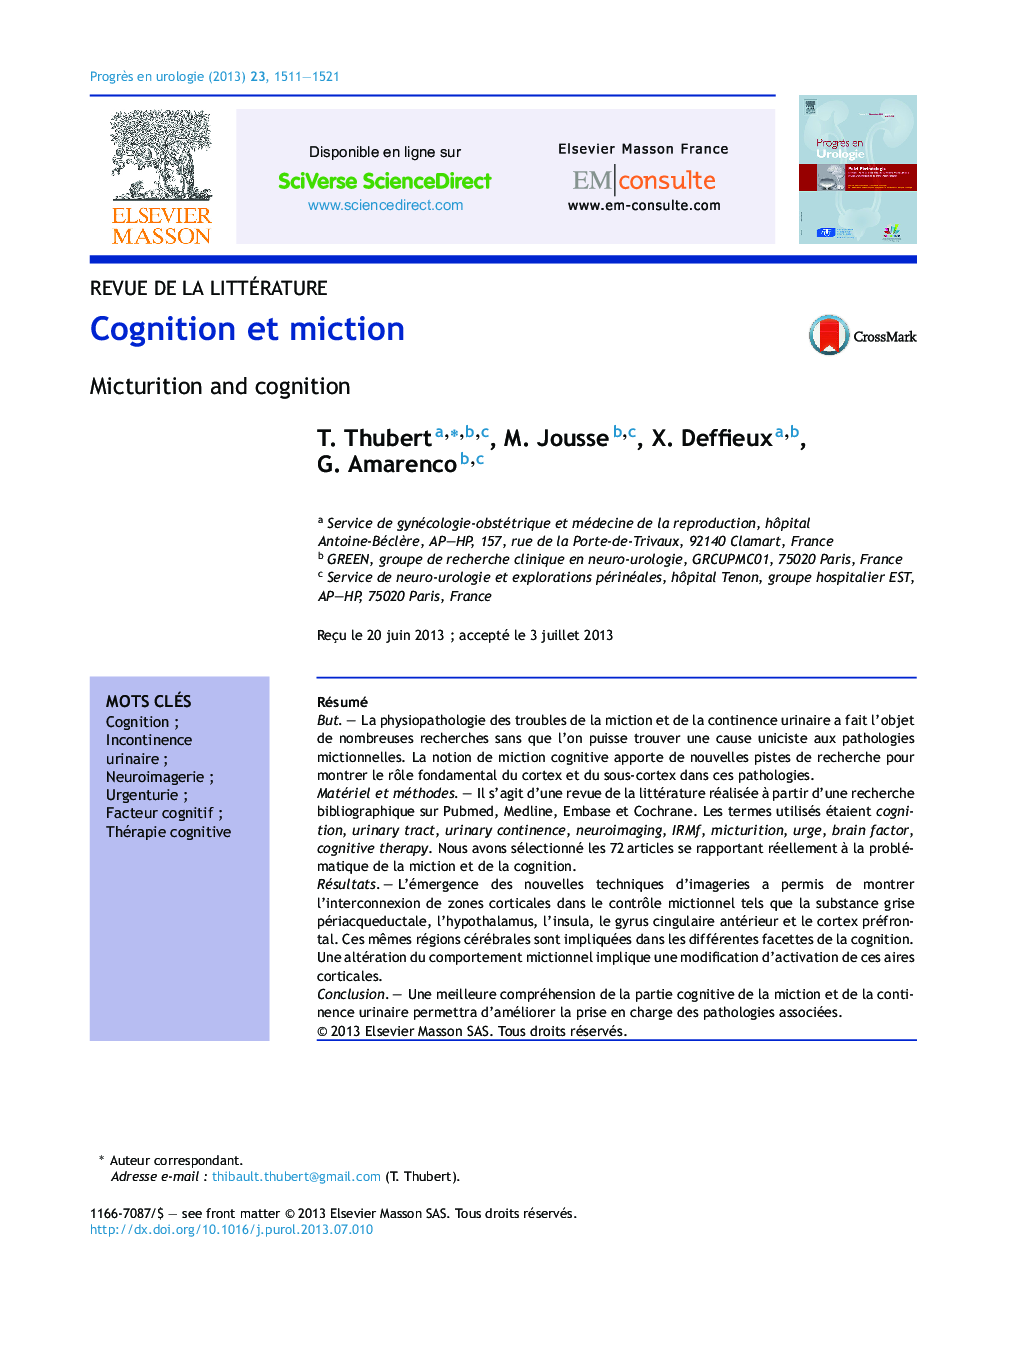 Cognition et miction